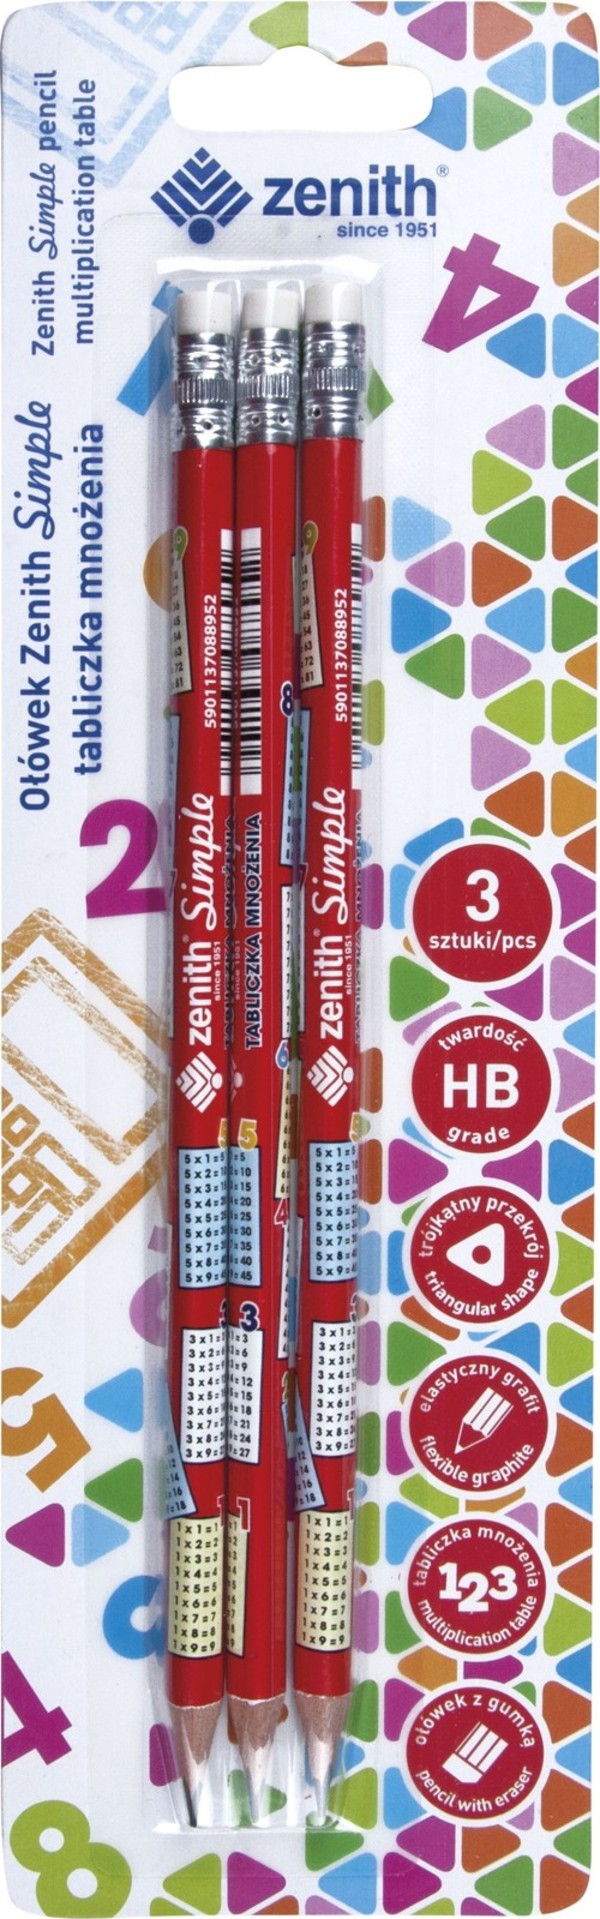 Ołówek Zenith Simple tabliczka mnożenia blister 3 sztuki